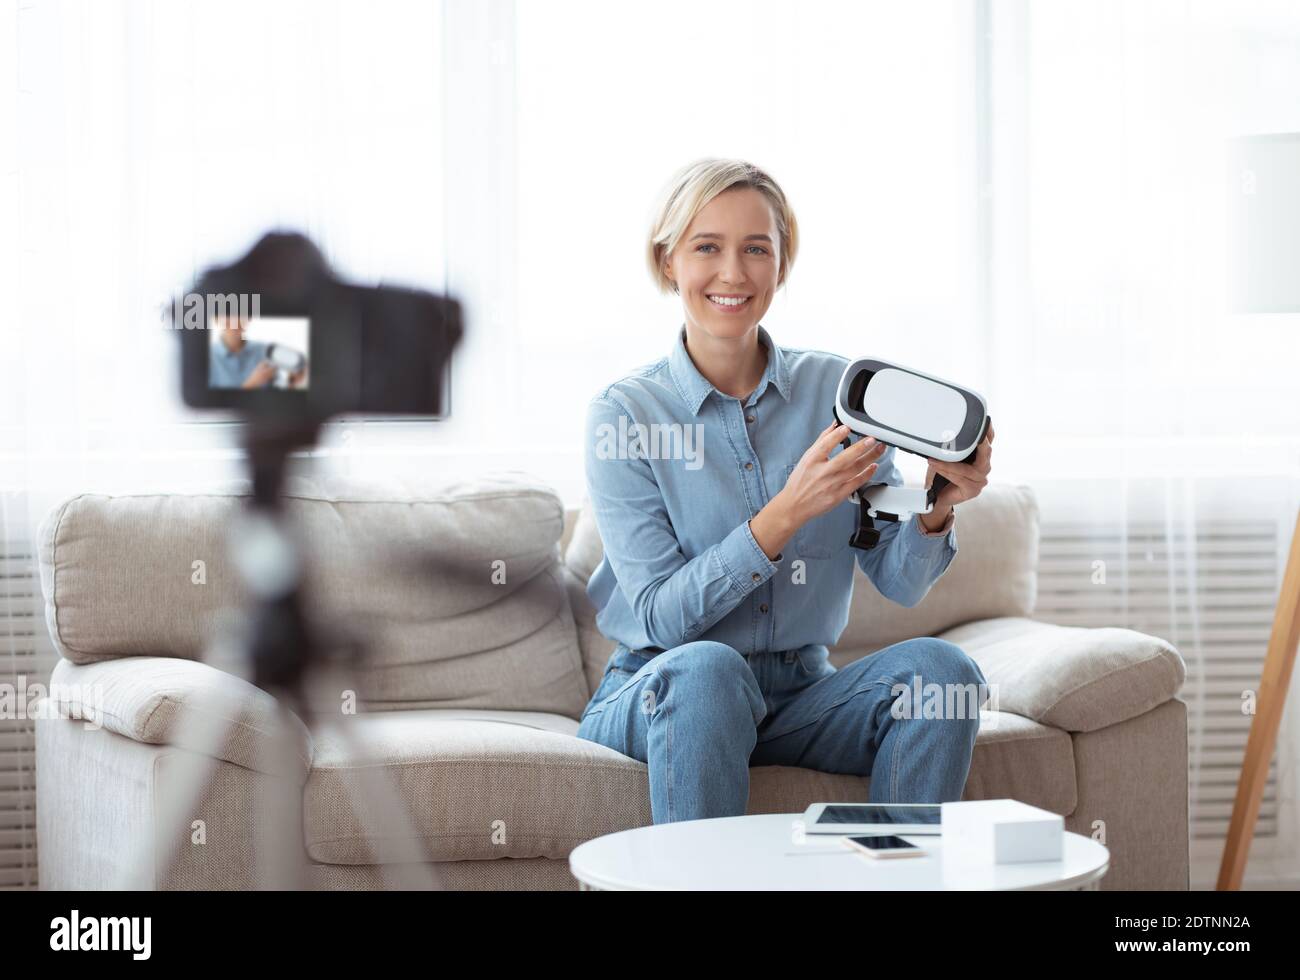 Une jeune femme vlogger tient un casque VR, montrant un appareil innovant, enregistrant une vidéo pour son blog technologique sur caméra Banque D'Images